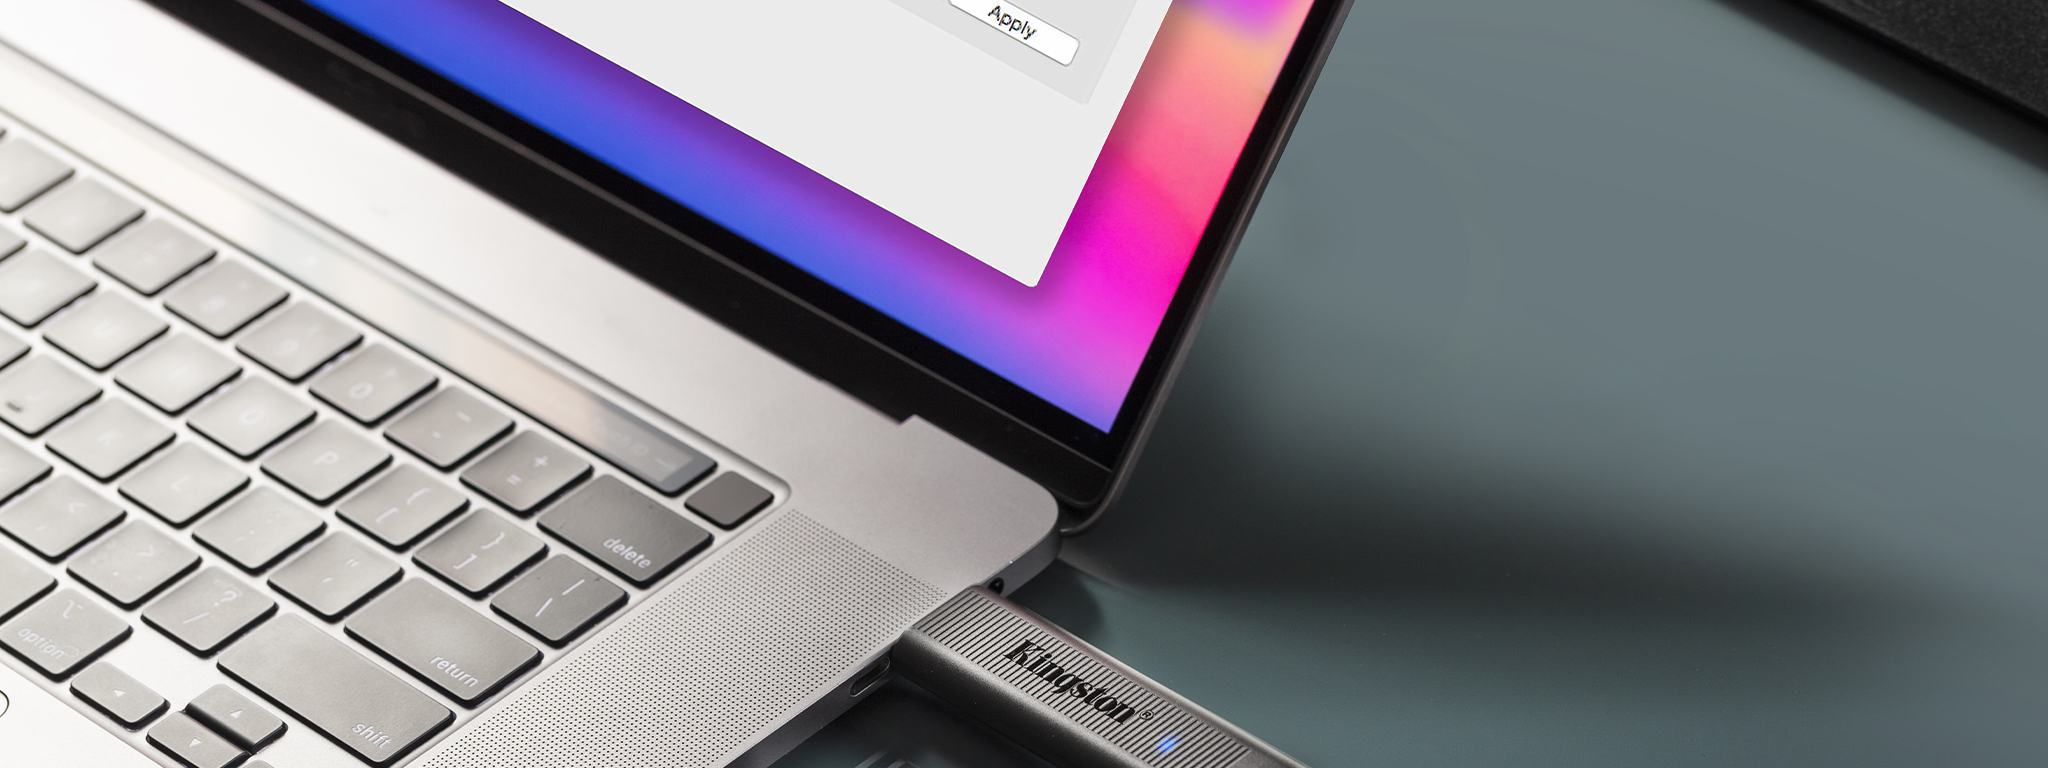 2 USB-накопителя DataTraveler Max, один из которых вставлен в ноутбук, а другой находится рядом с ним на столе